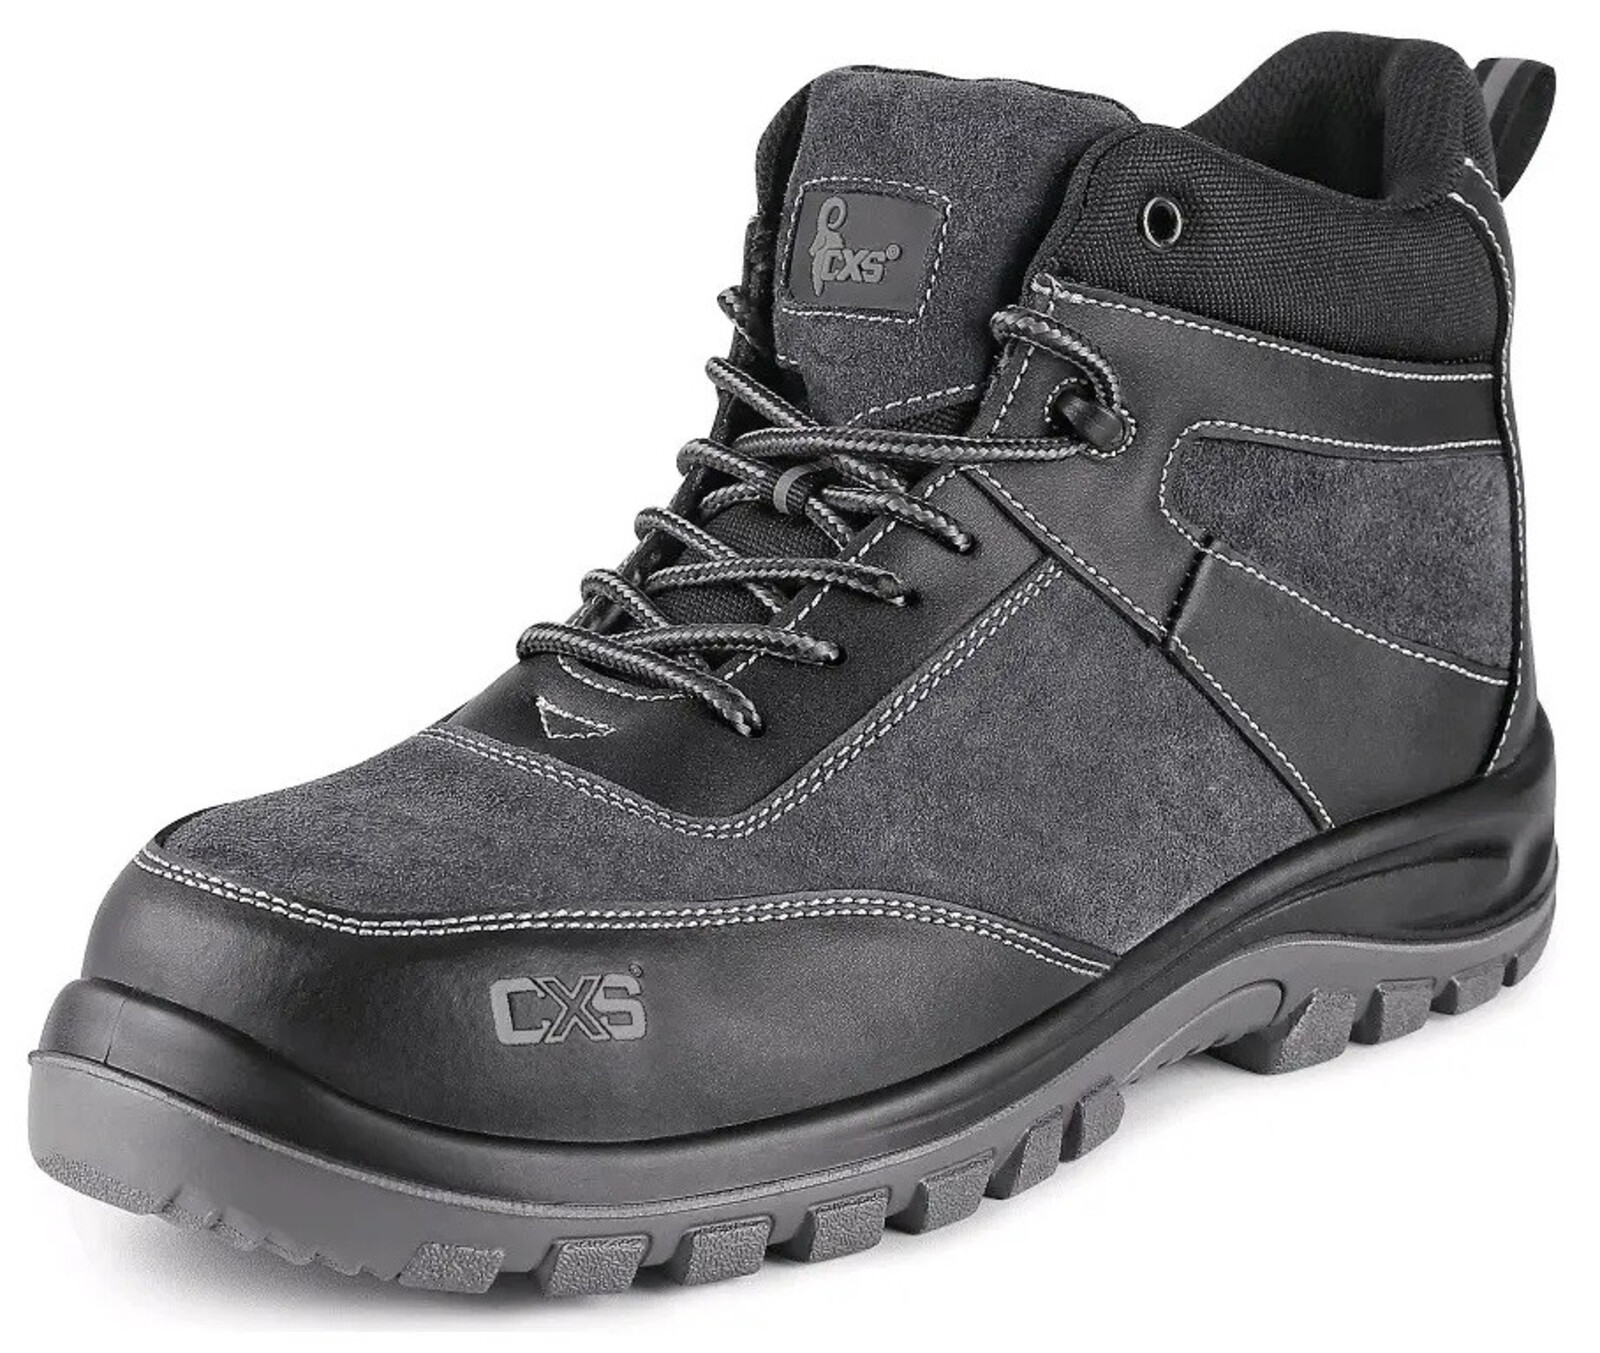 Bezpečnostná členková obuv CXS Profit Top S1P SRC - veľkosť: 46, farba: čierna/sivá